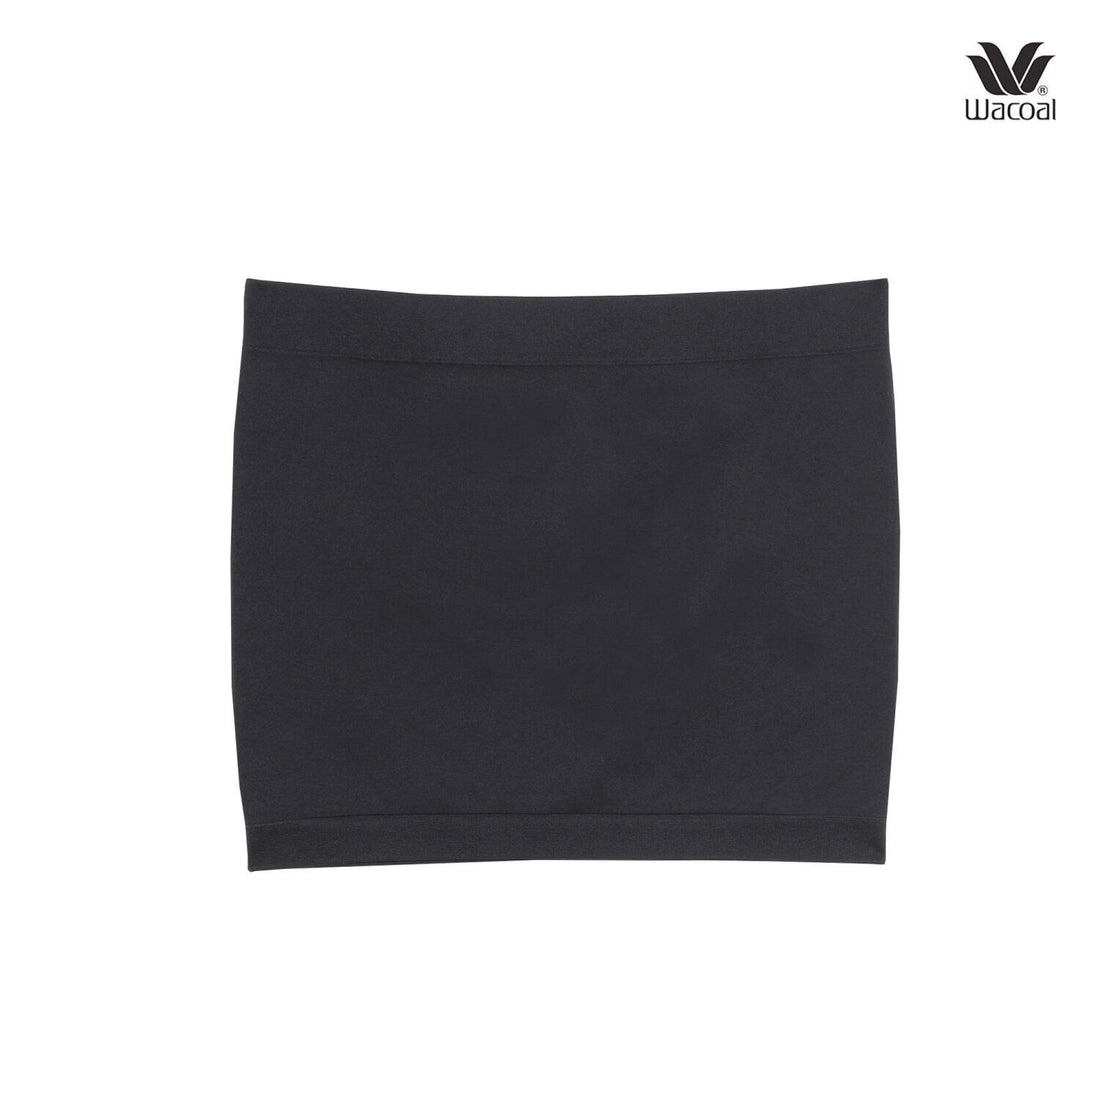 Wacoal Lingerie Strapless bra, soft, seamless, model WH9792, black (BL)